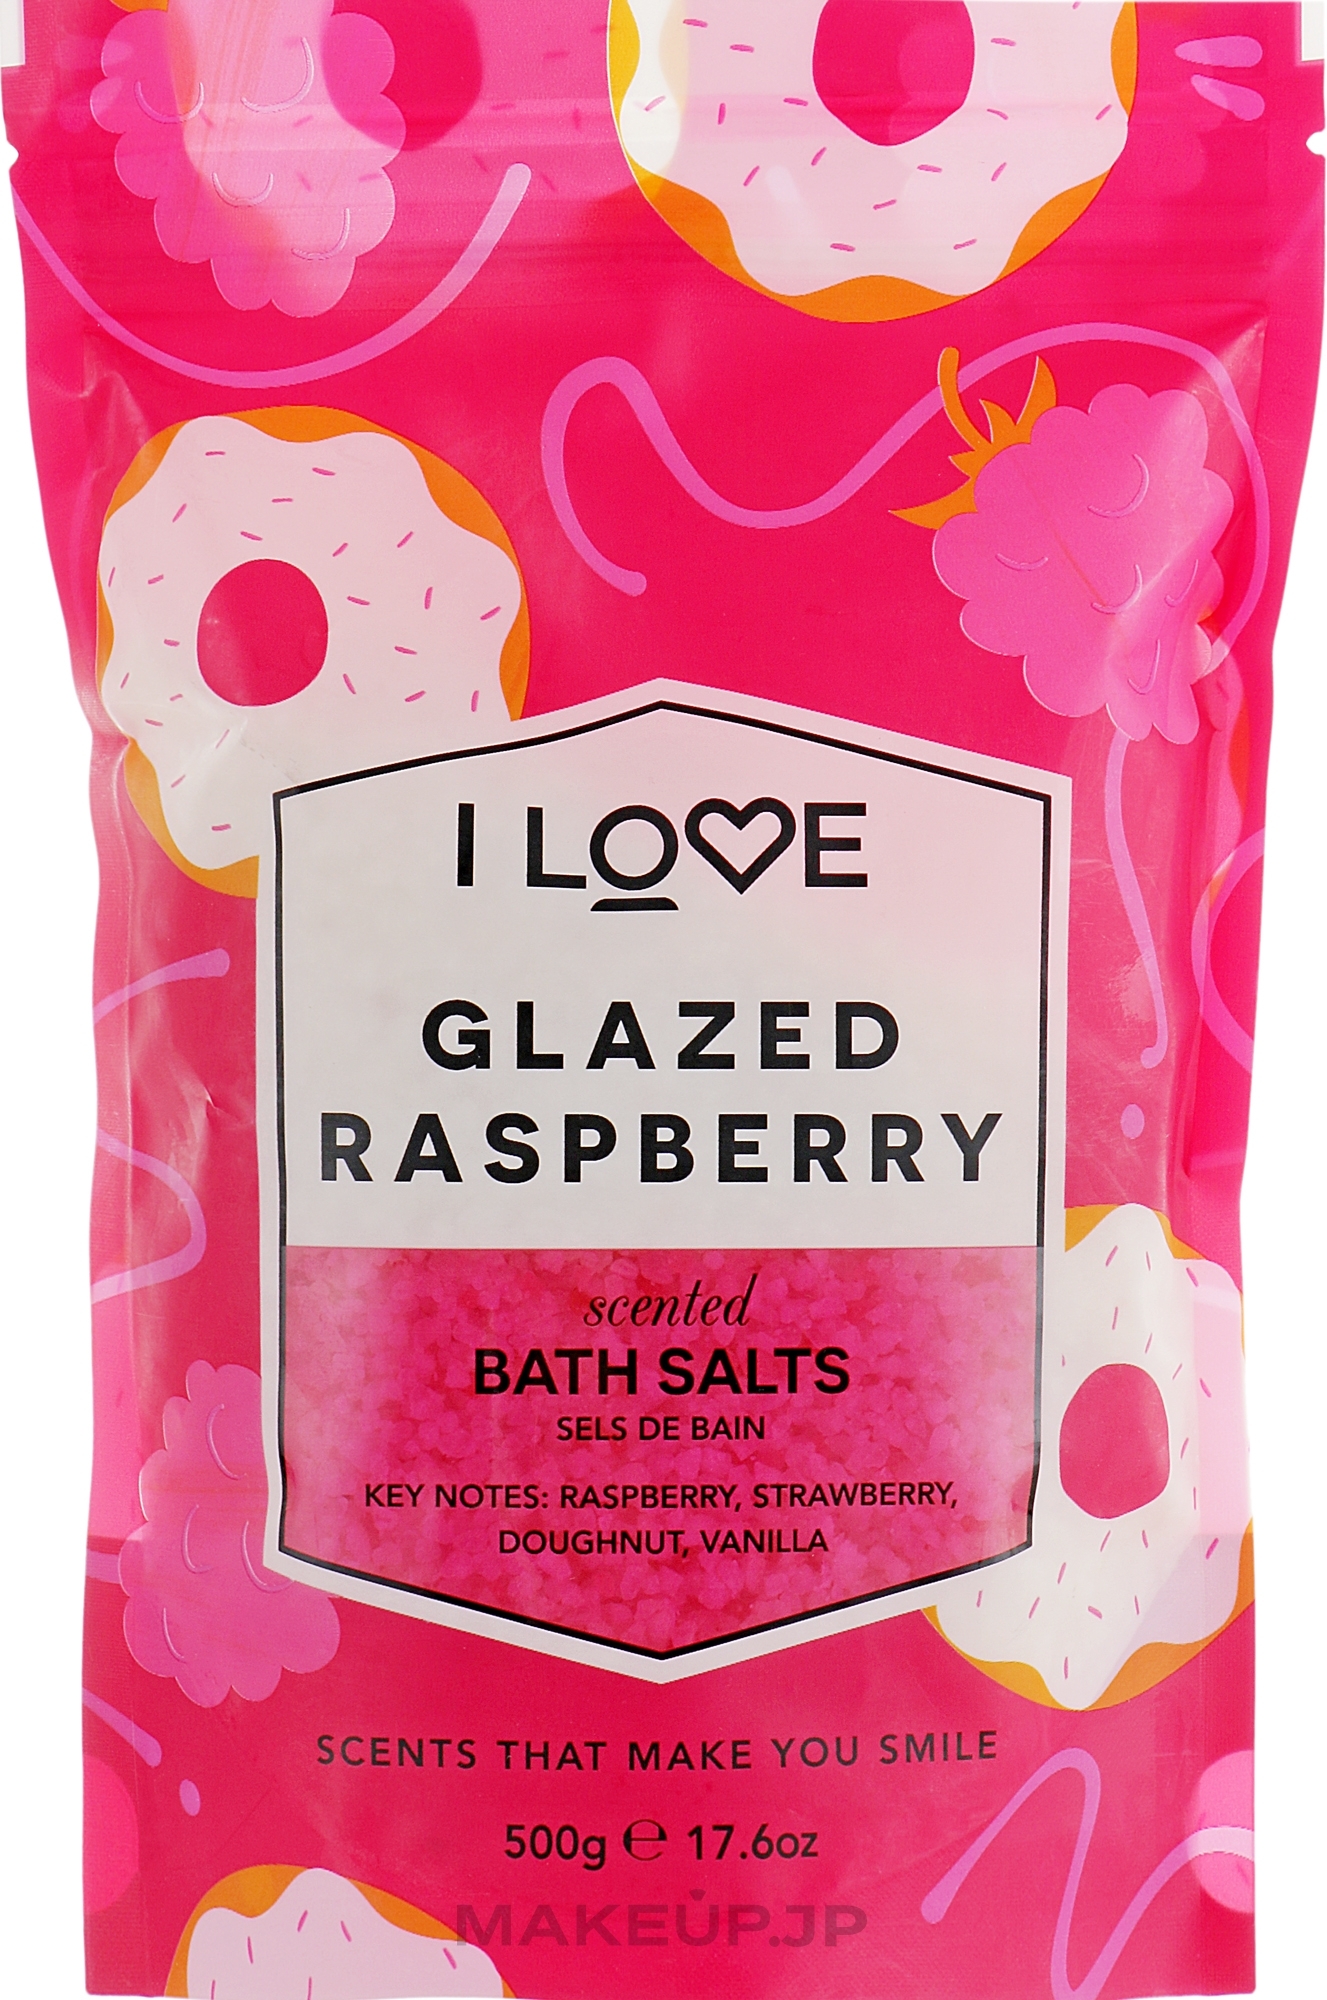 Bath Salt "Glazed Raspberry" - I Love Glazed Raspberry Bath Salt — photo 500 g